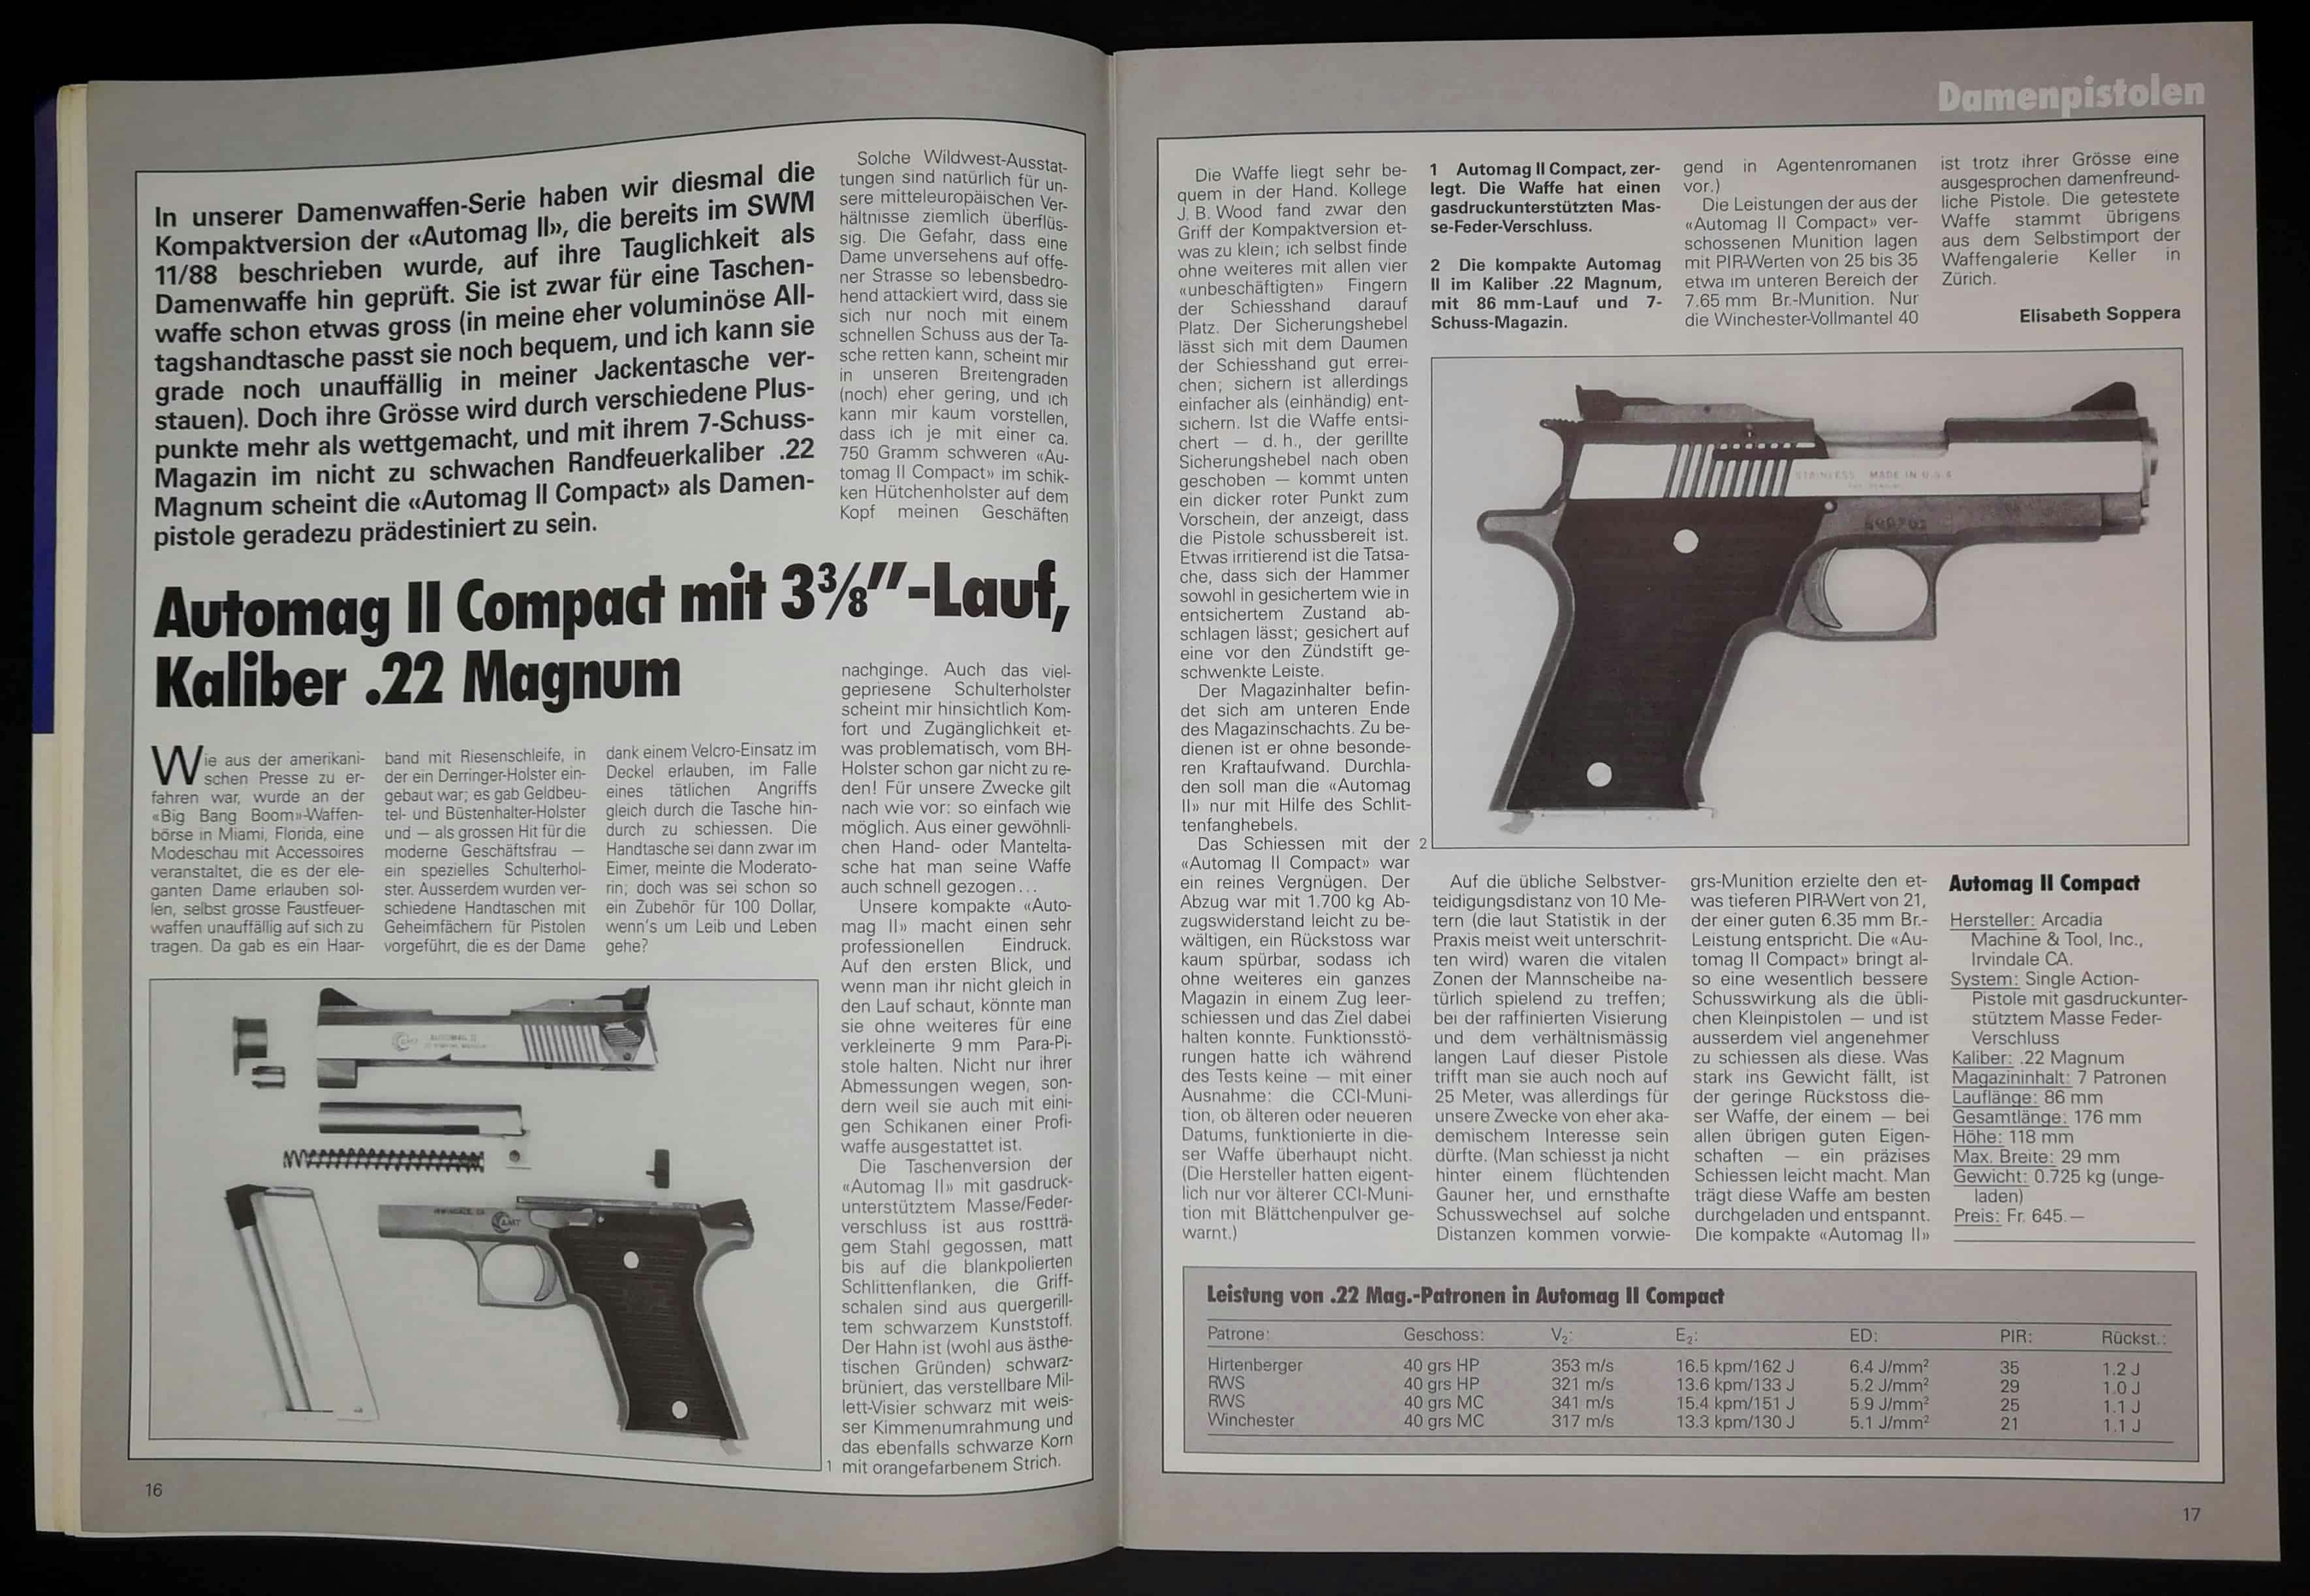 Automag II in .22 Magnum, eine "ausgesprochen damenfreundliche Pistole".